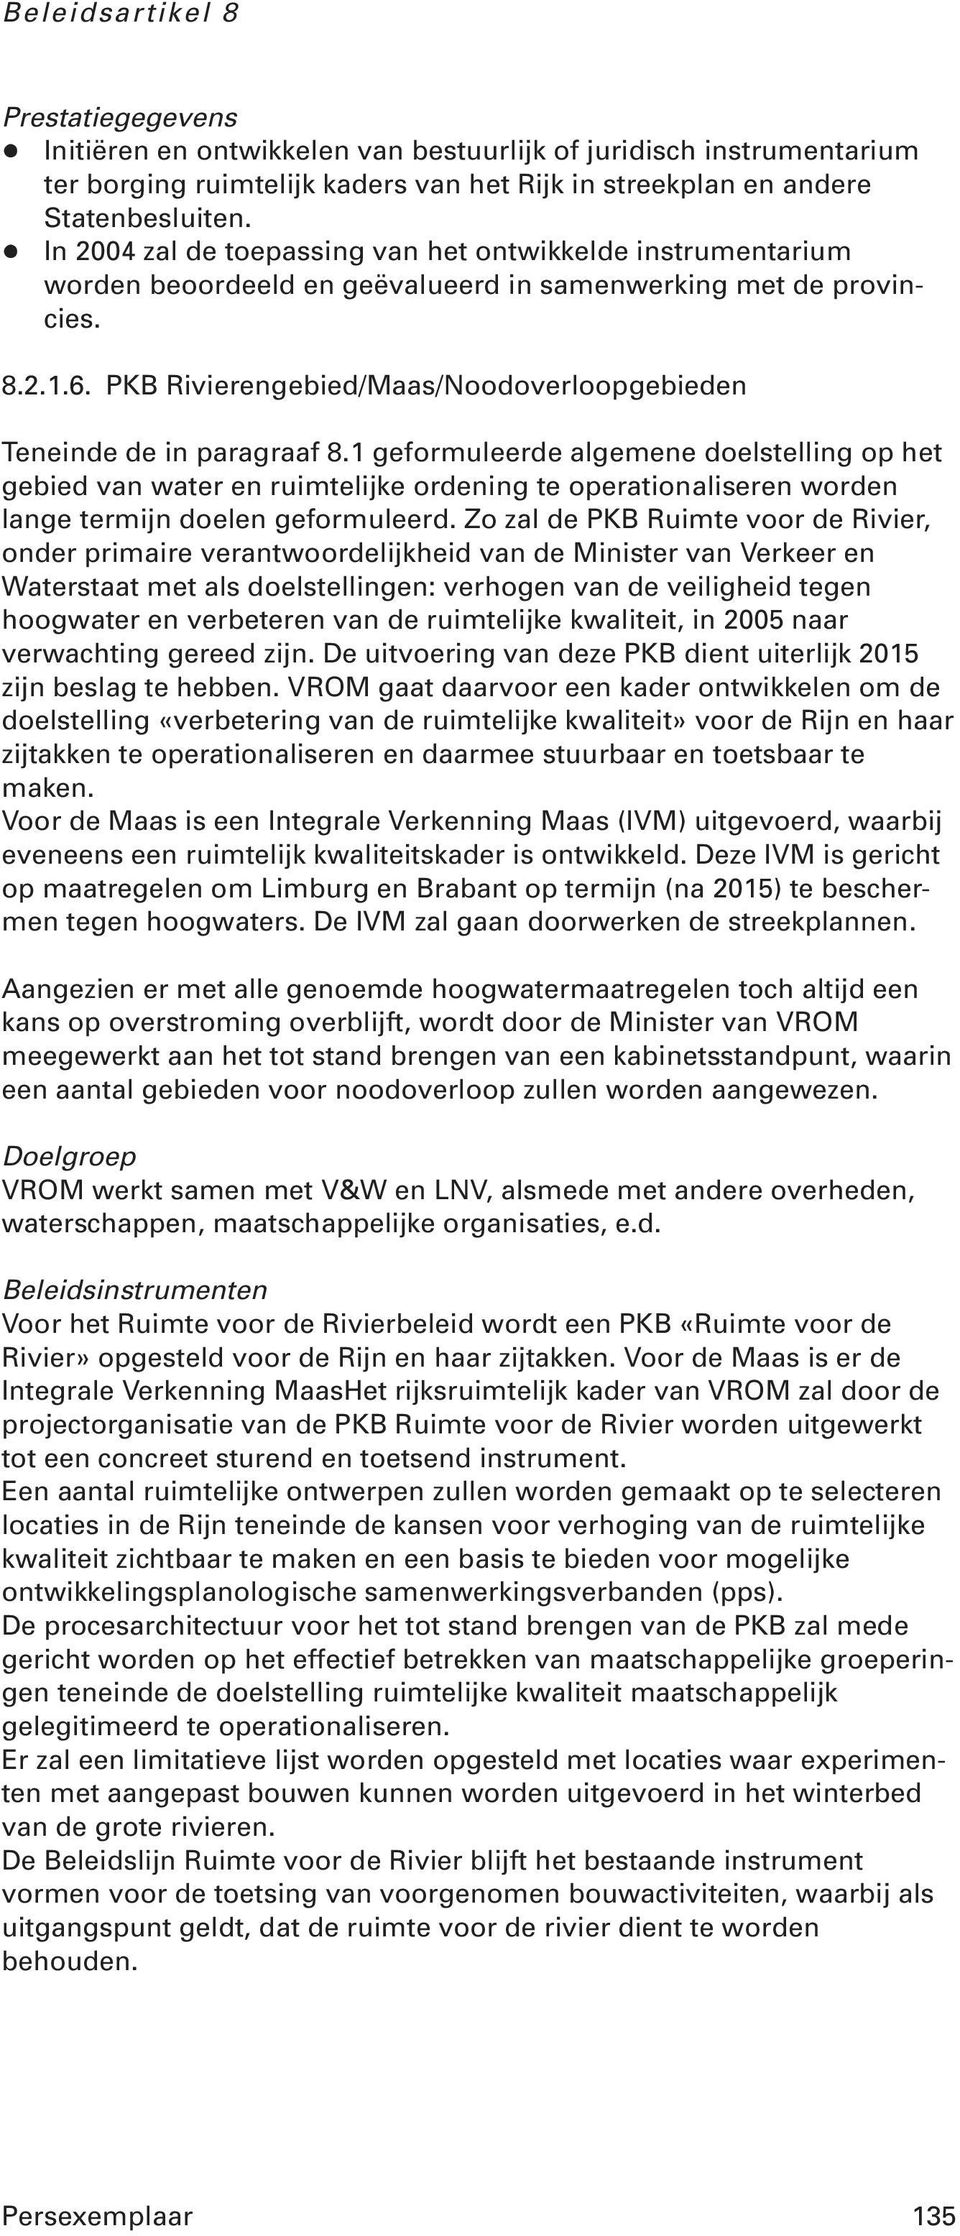 PKB Rivierengebied/Maas/Noodoverloopgebieden Teneinde de in paragraaf 8.